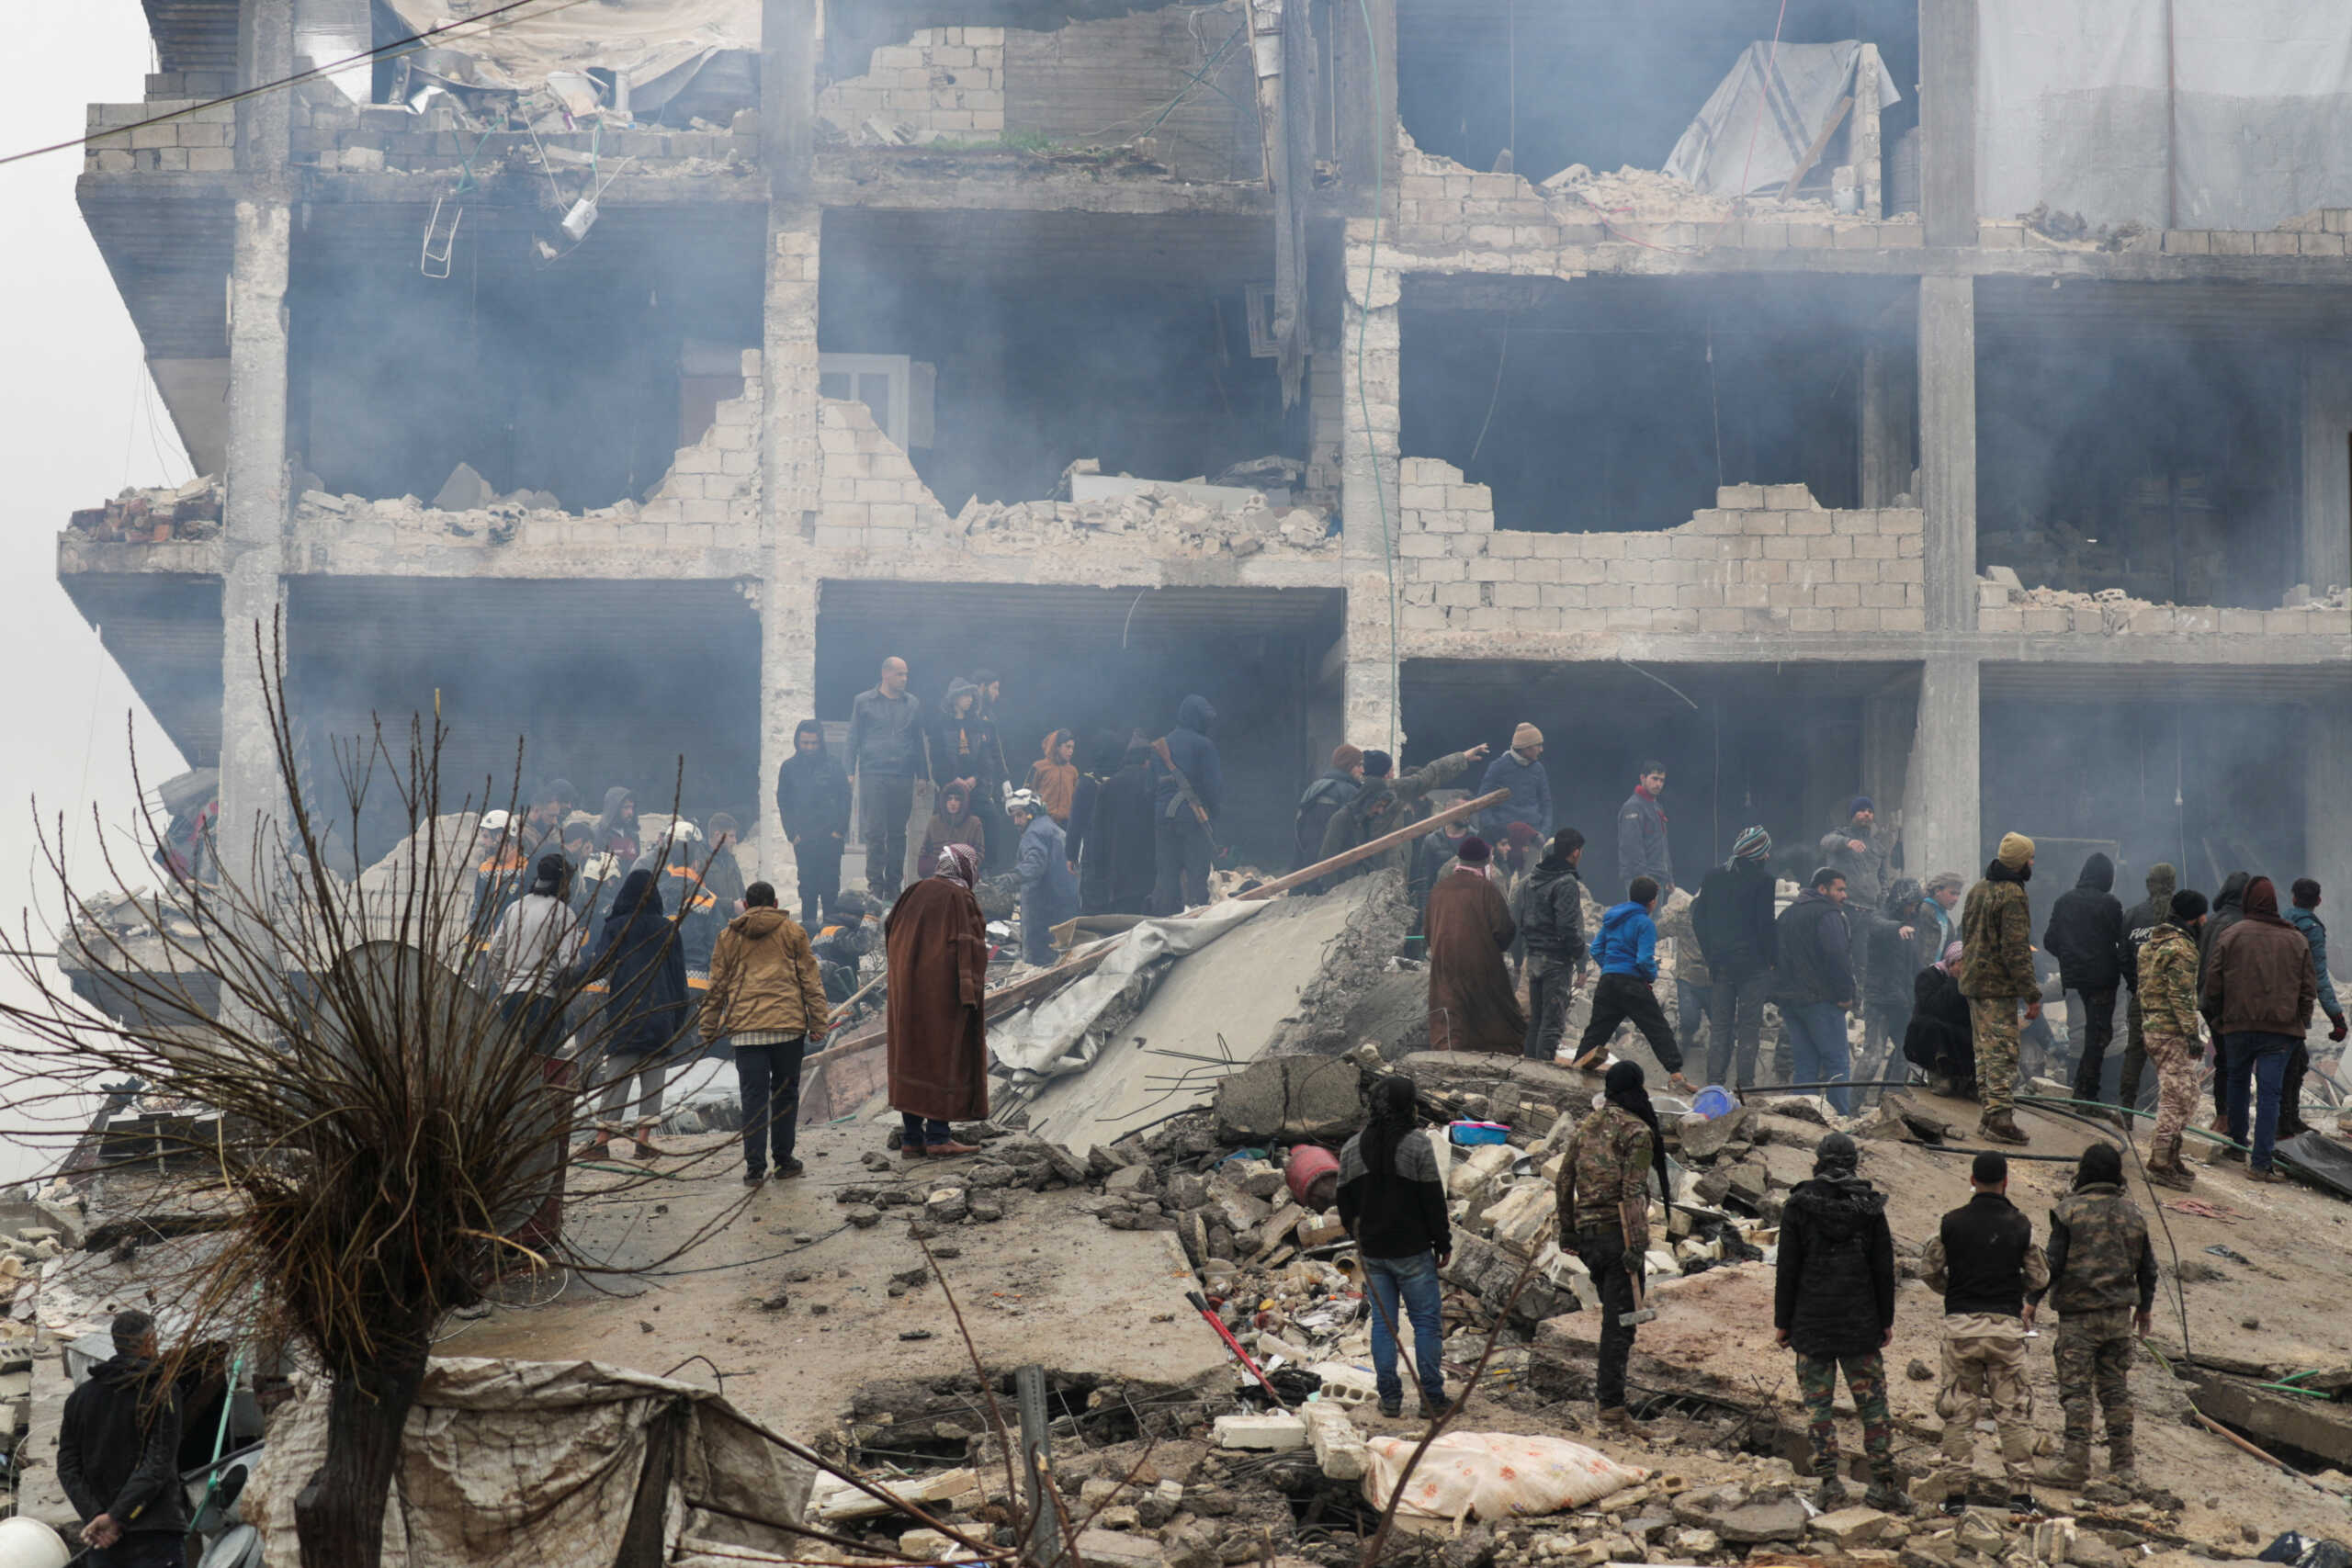 ΟΗΕ: O σεισμός επηρέασε την παροχή βοήθειας στη Συρία